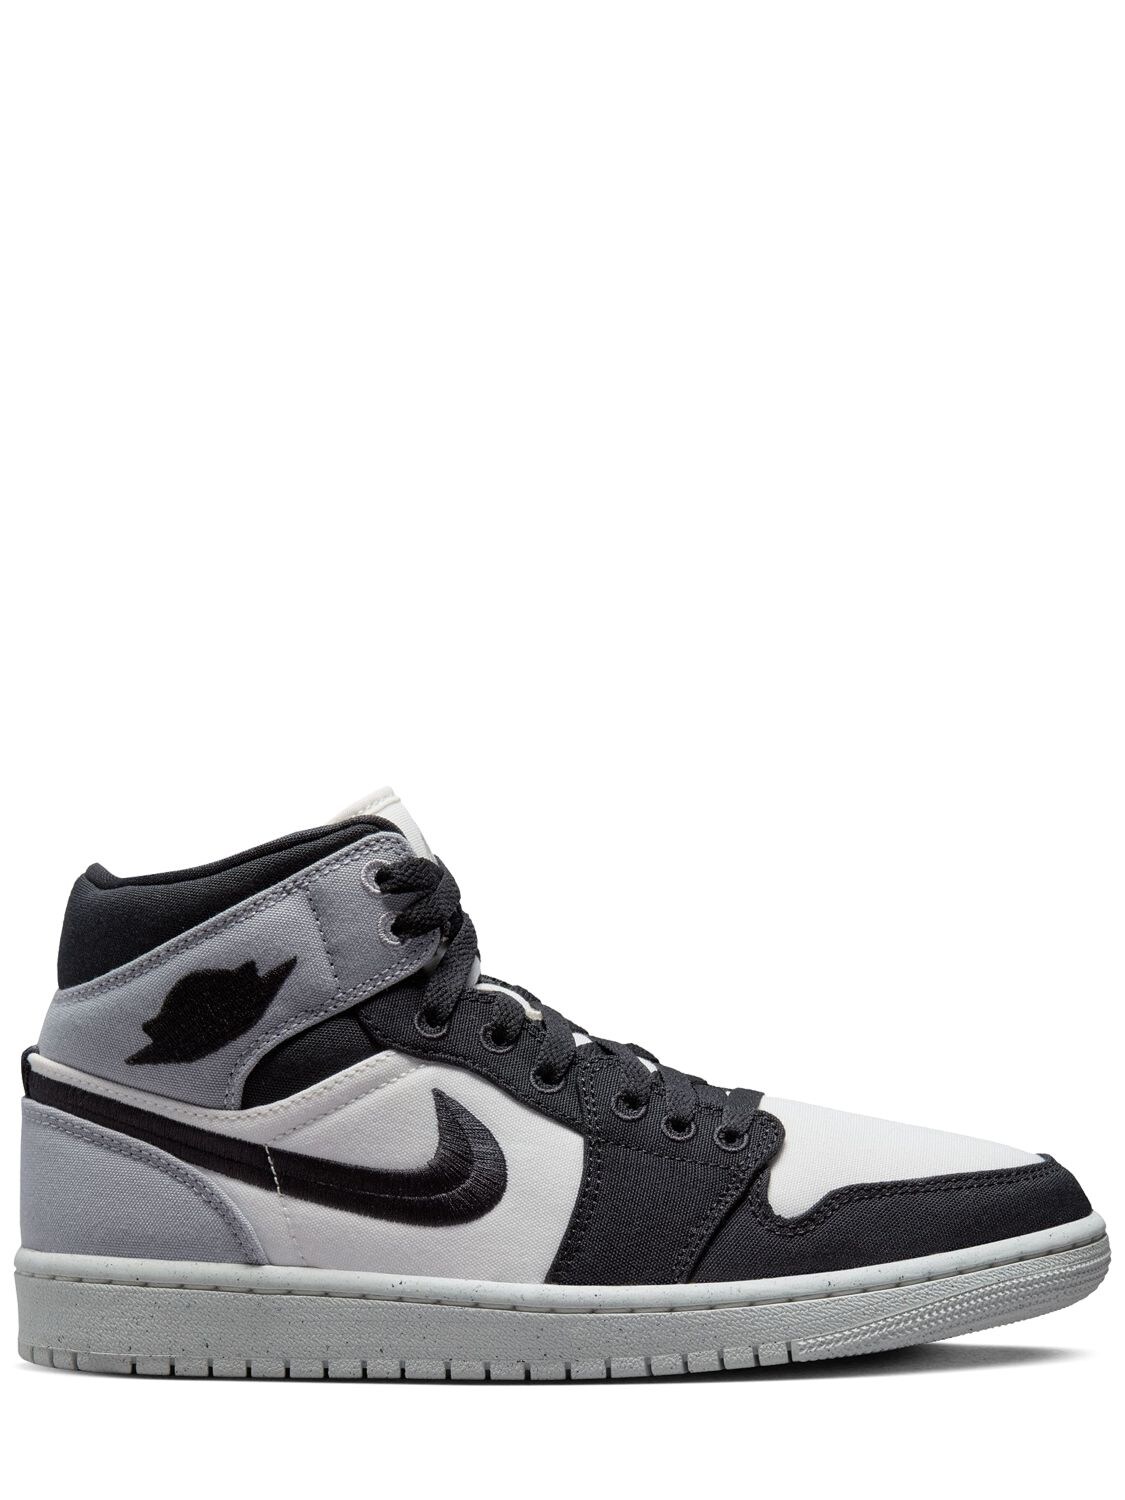 Image of Air Jordan 1 Mid Se Sneakers